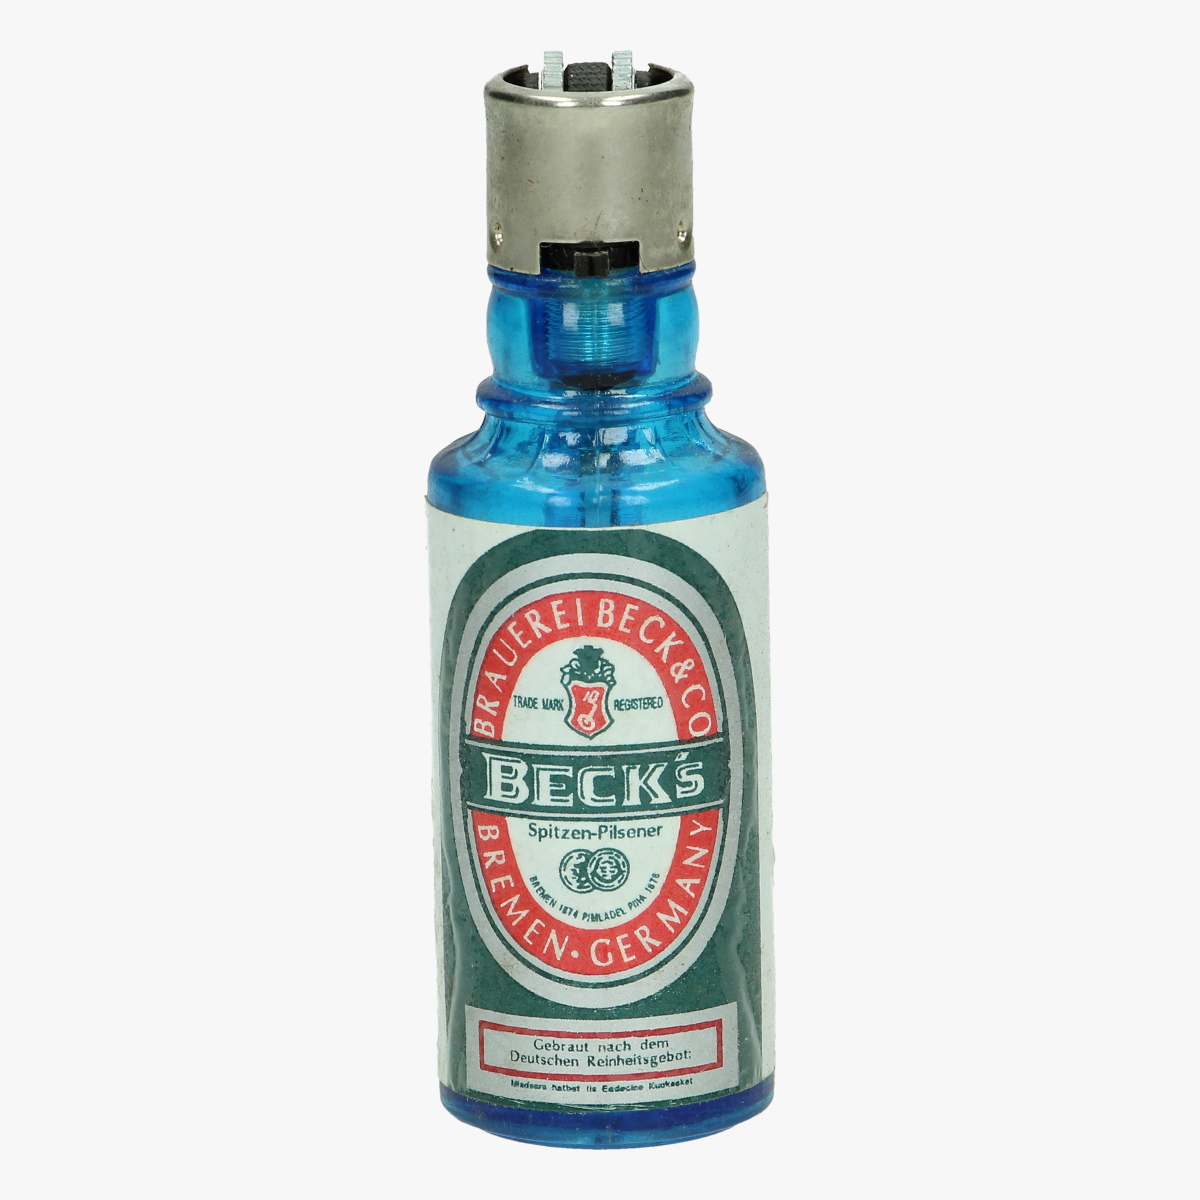 Afbeeldingen van aansteker flesje Beck's navulbaar